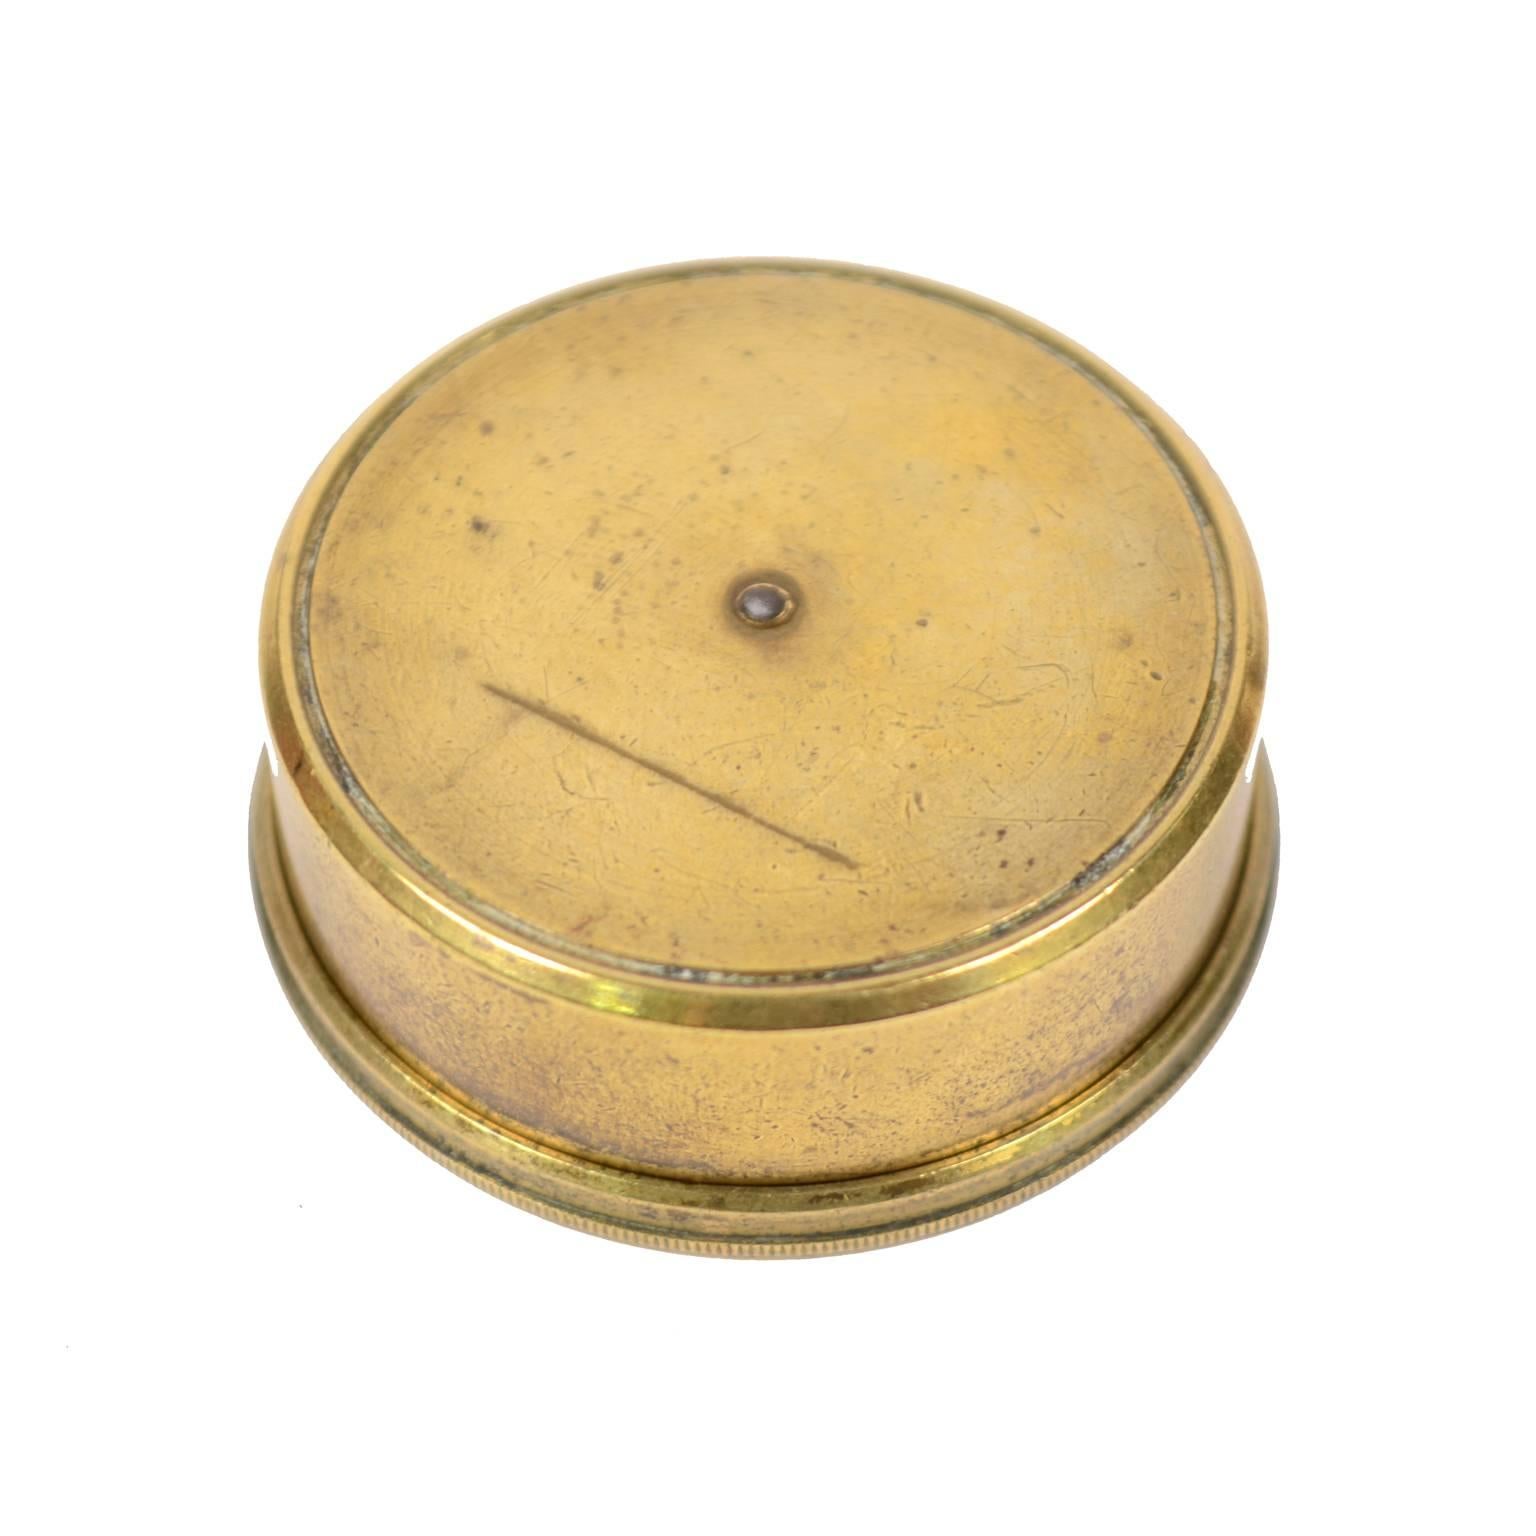 brass nautical compass